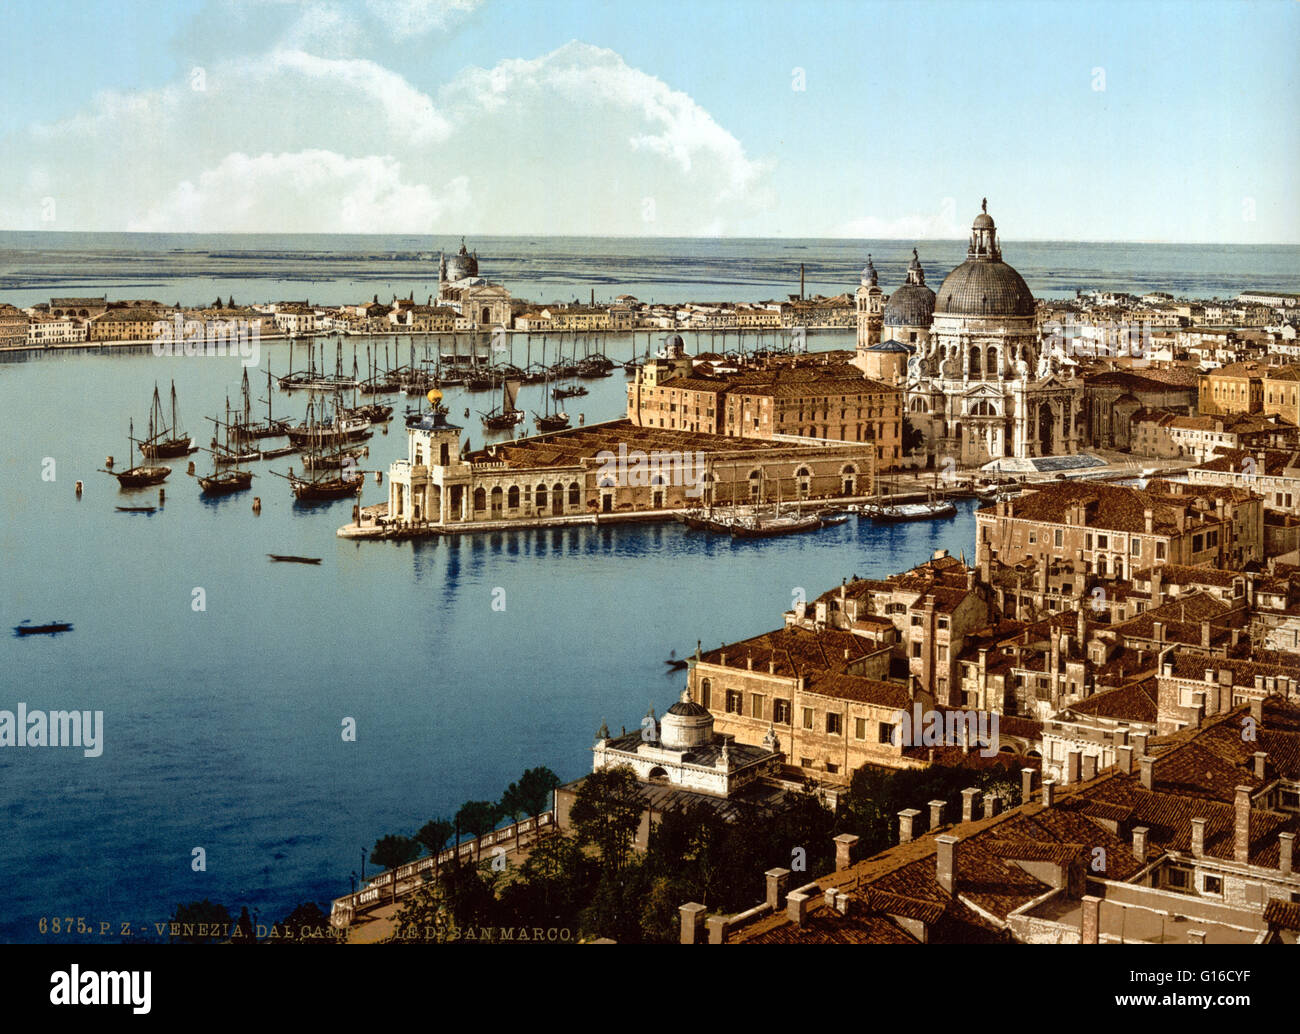 Venise est une ville dans le nord-est de l'Italie situé sur un groupe de 118 petites îles séparées par des canaux et reliés par des ponts. Il est situé dans la lagune vénitienne marécageuse qui s'étend le long du littoral, entre l'embouchure du Pô et de la Piave Rivers. Ven Banque D'Images